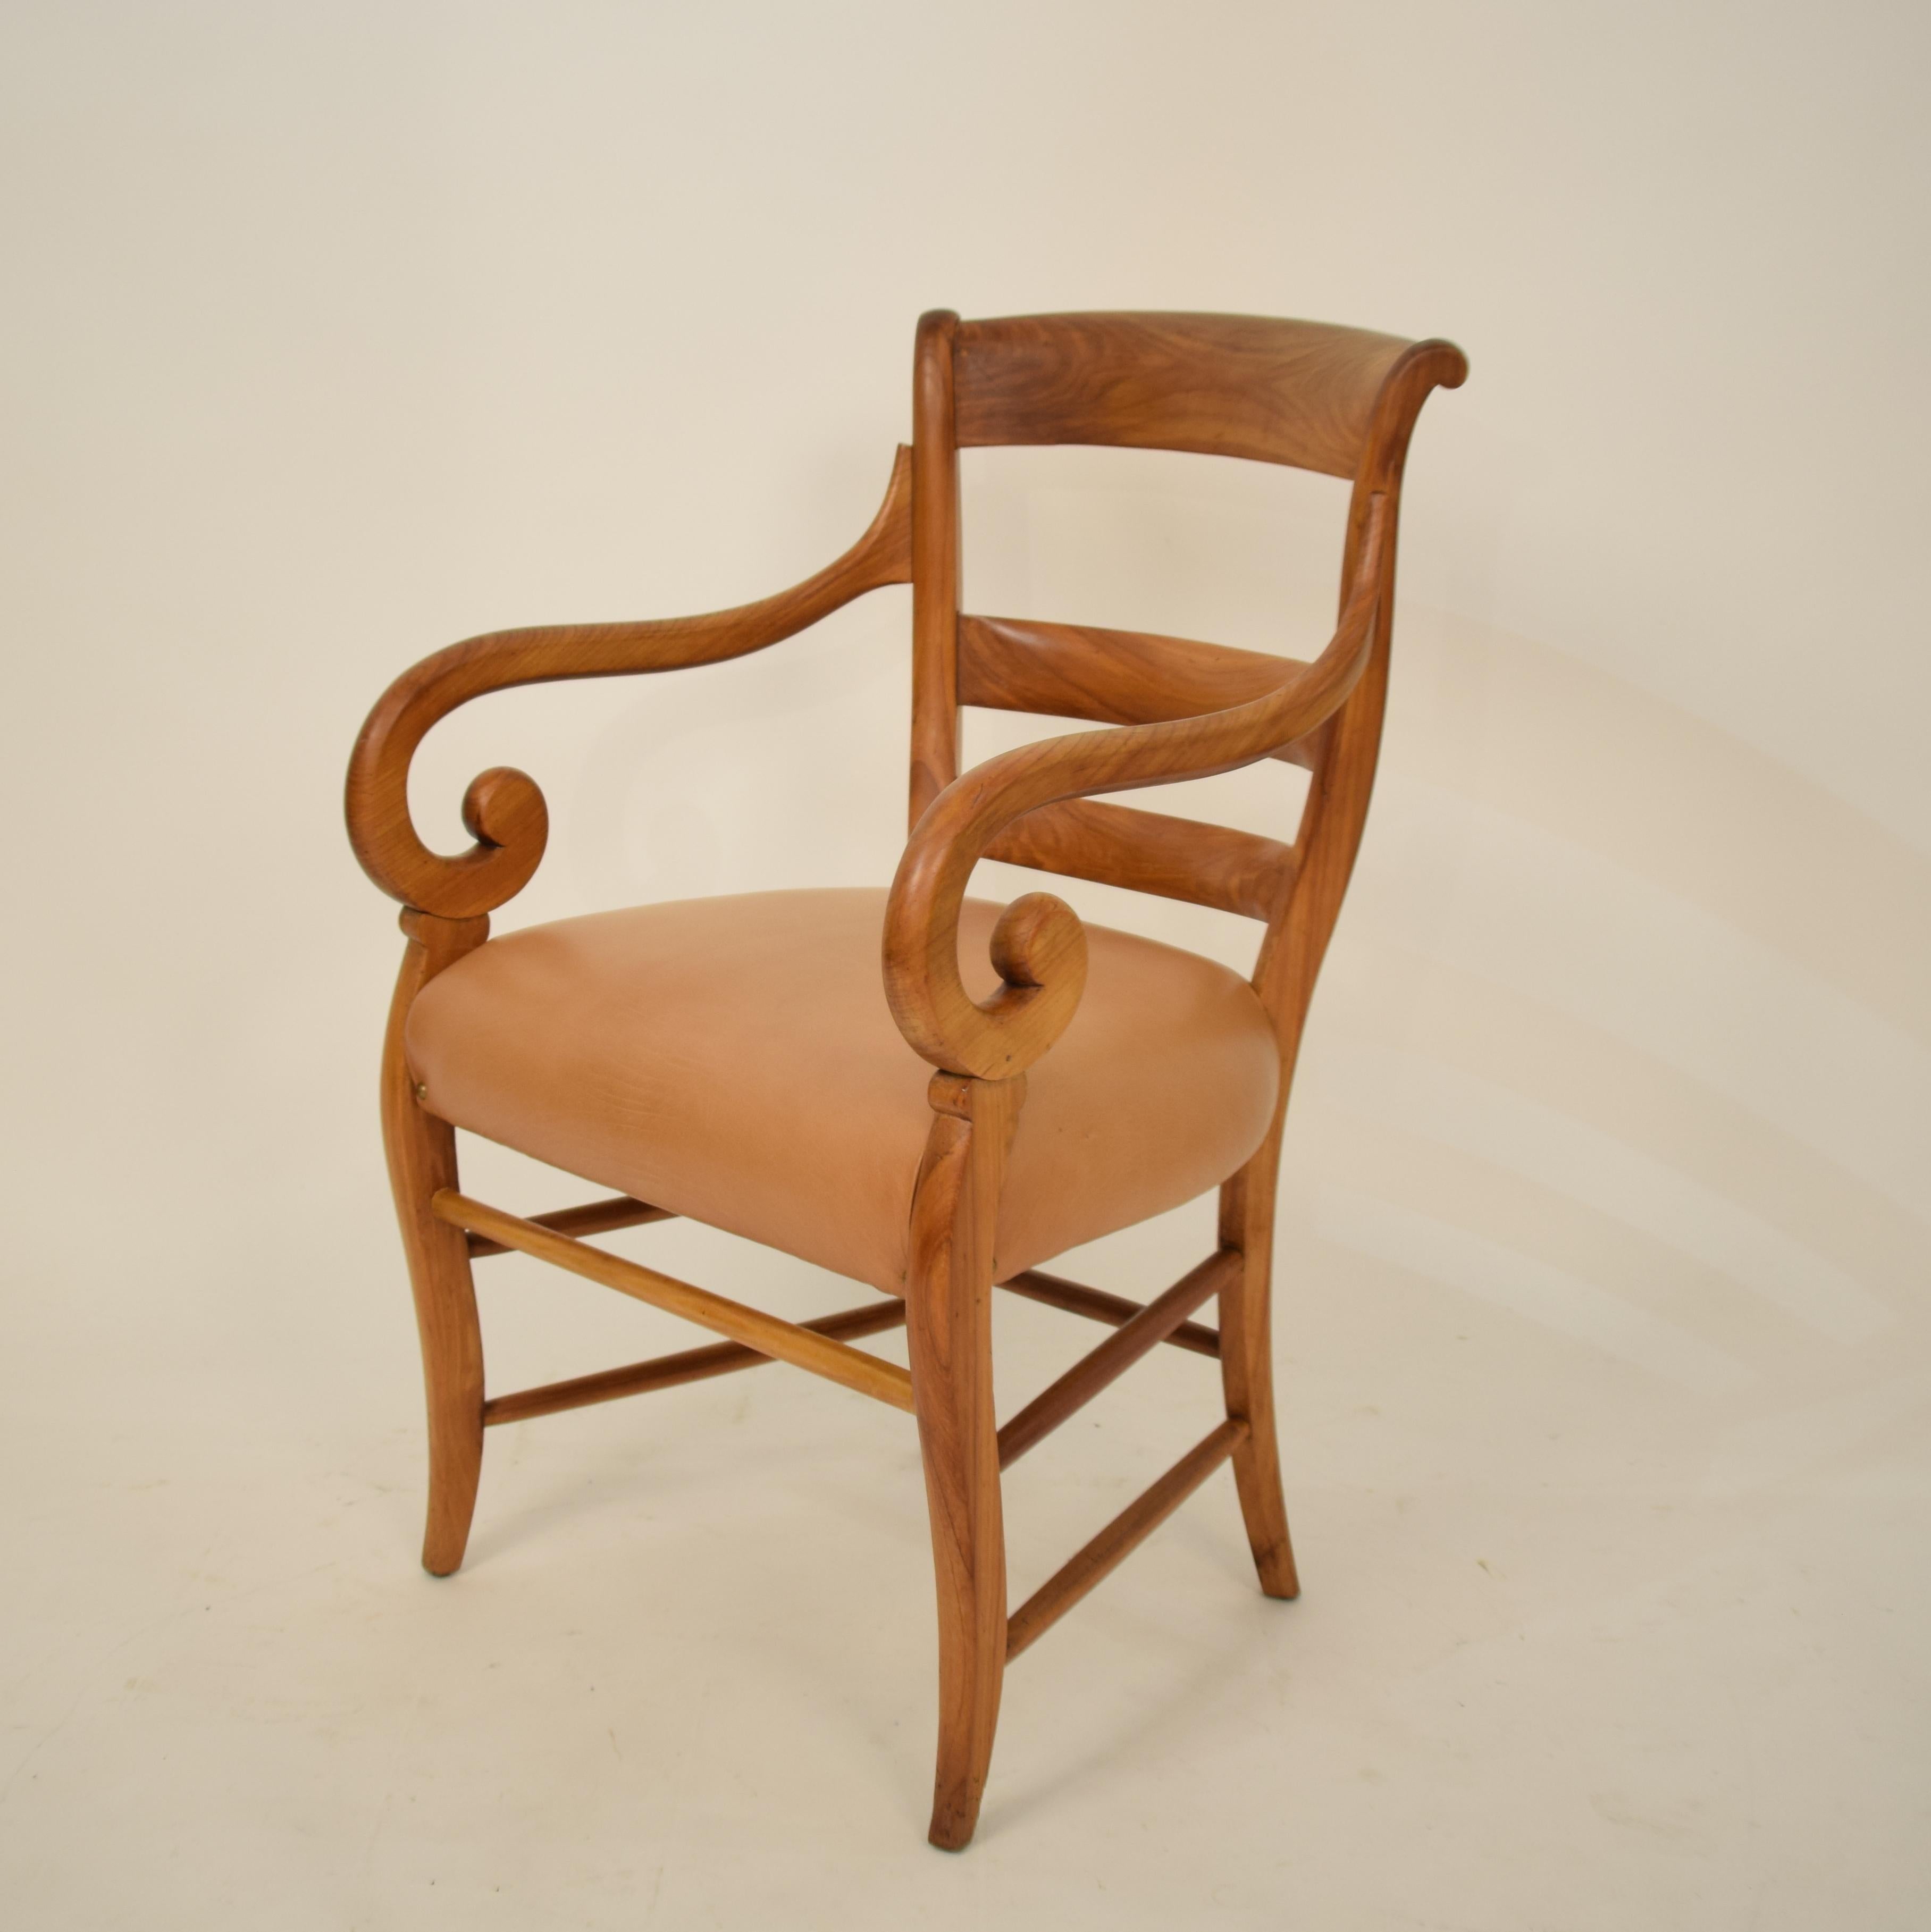 Ce fauteuil Biedermeier allemand du XIXe siècle a été fabriqué dans les années 1920. Il est fabriqué en bois de cerisier massif et l'assise est recouverte de cuir marron / cognac.
Une pièce unique qui attire tous les regards dans votre intérieur